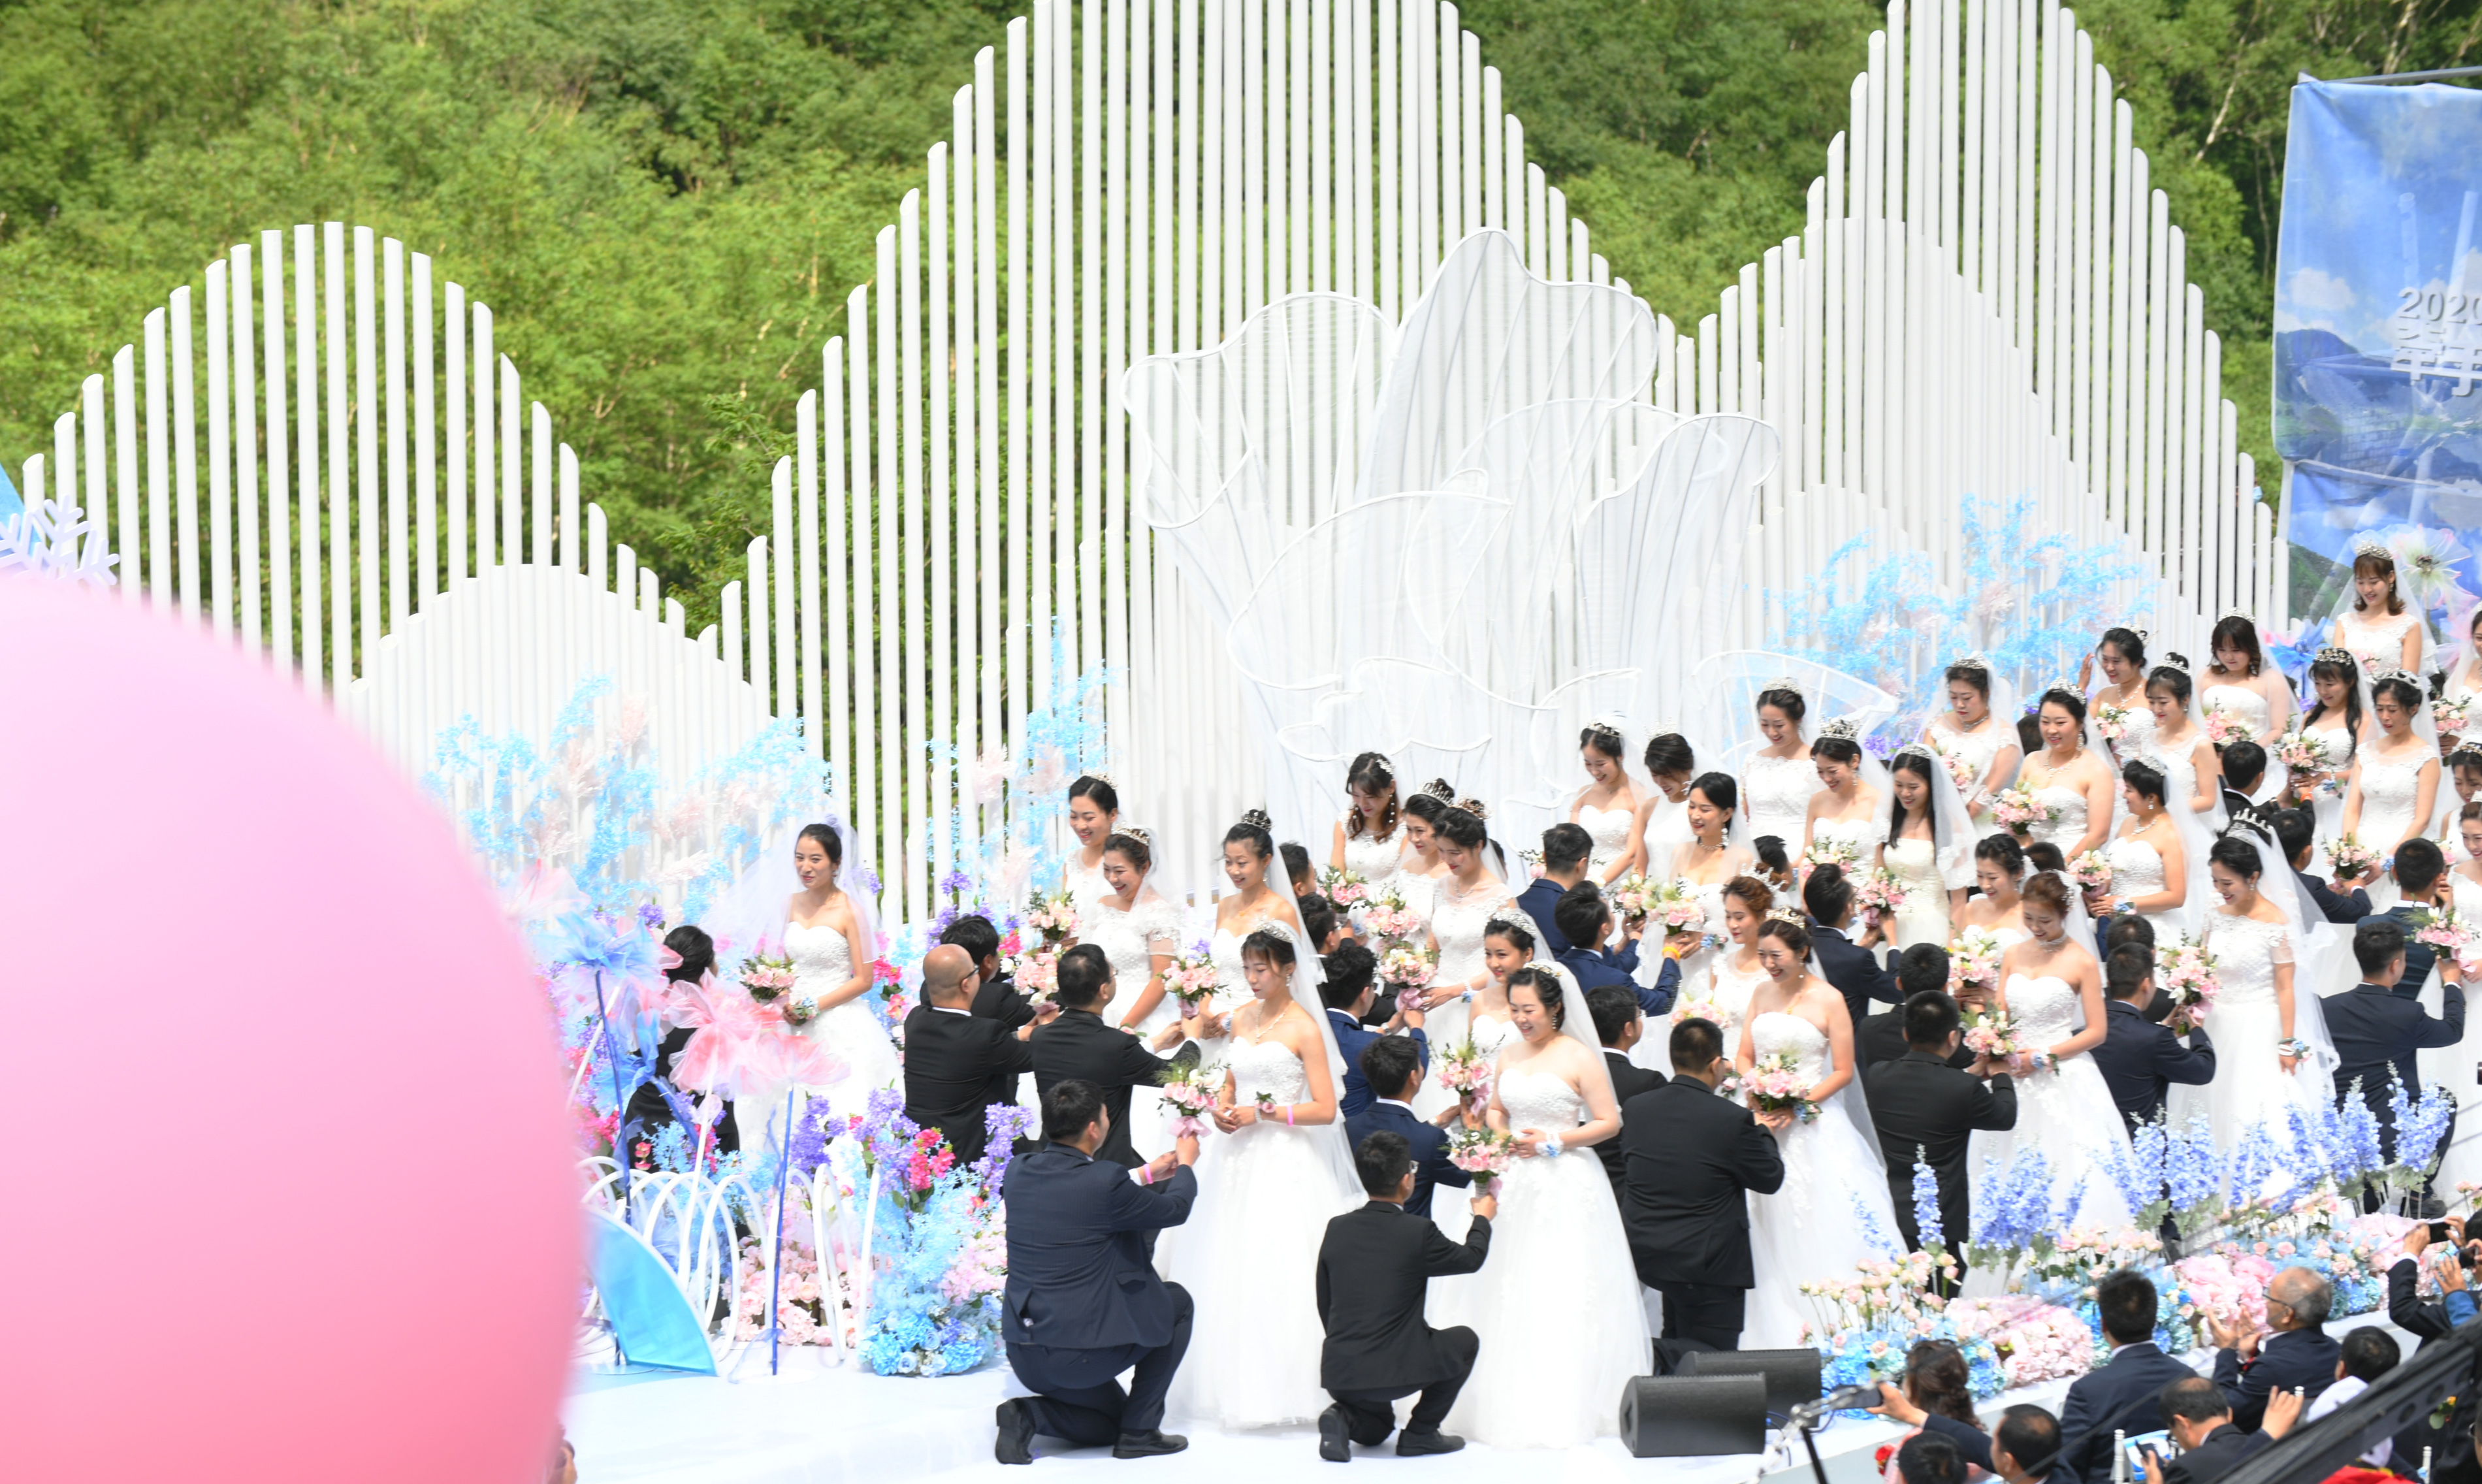 コロナ対応従事者の合同結婚式を開催 中国 吉林省 写真7枚 国際ニュース Afpbb News